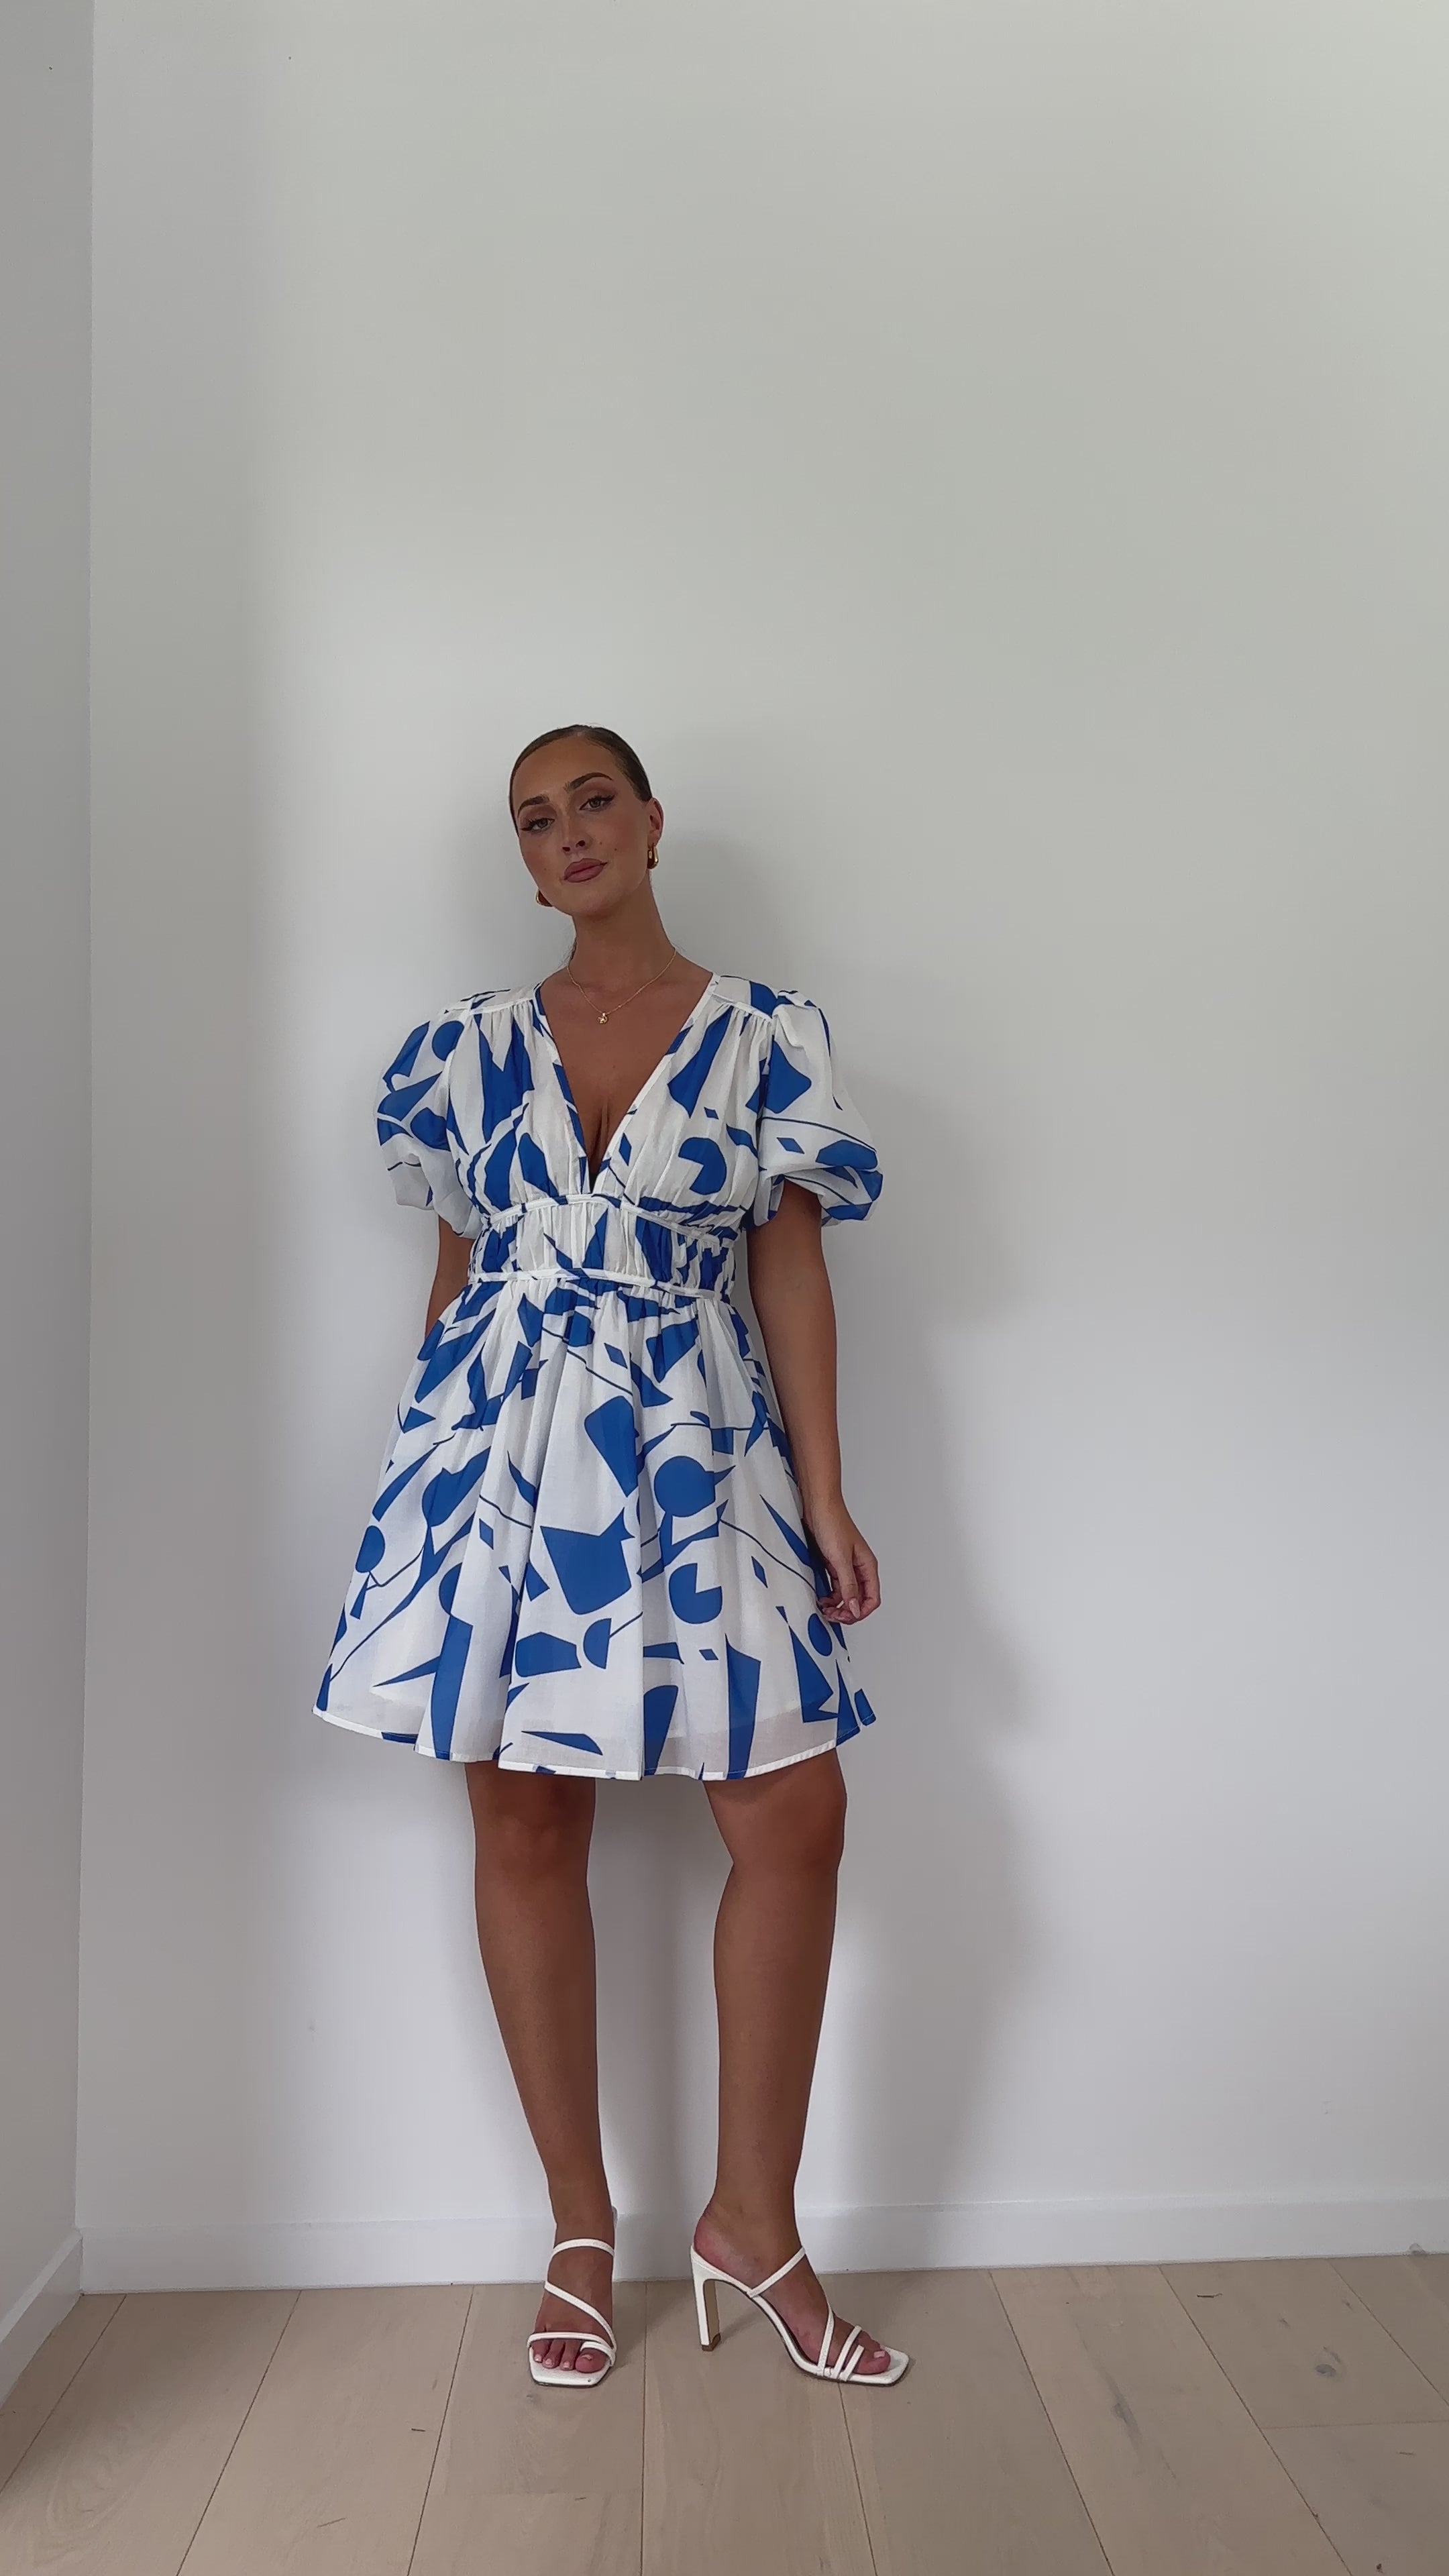 Venice Mini Dress - Blue/White